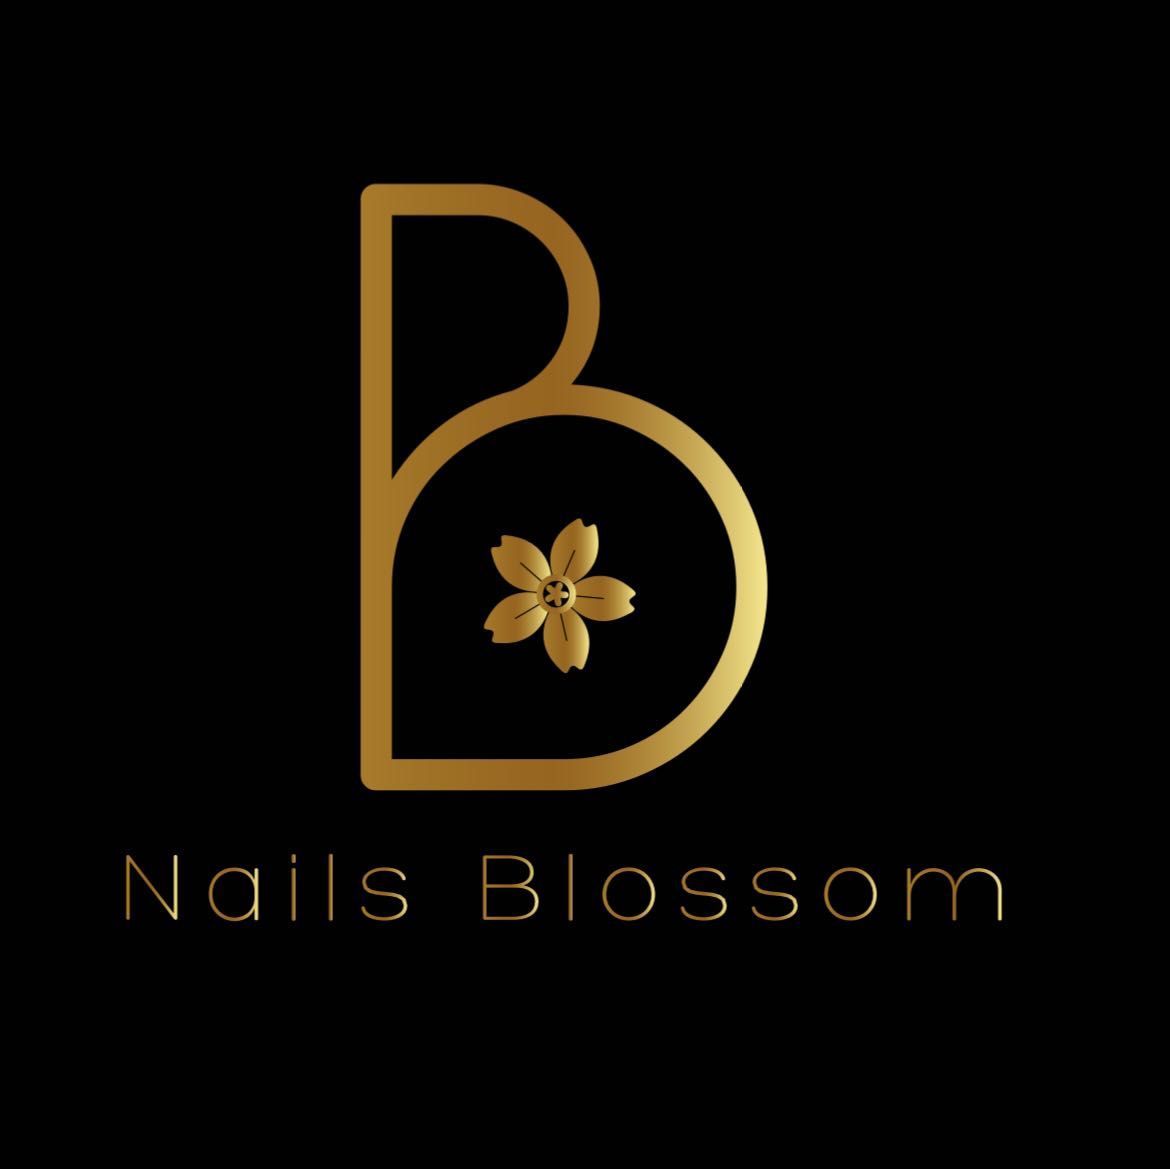 Nails Blossom 2, Carrer de la Santa Creu, 5, 08024, Barcelona